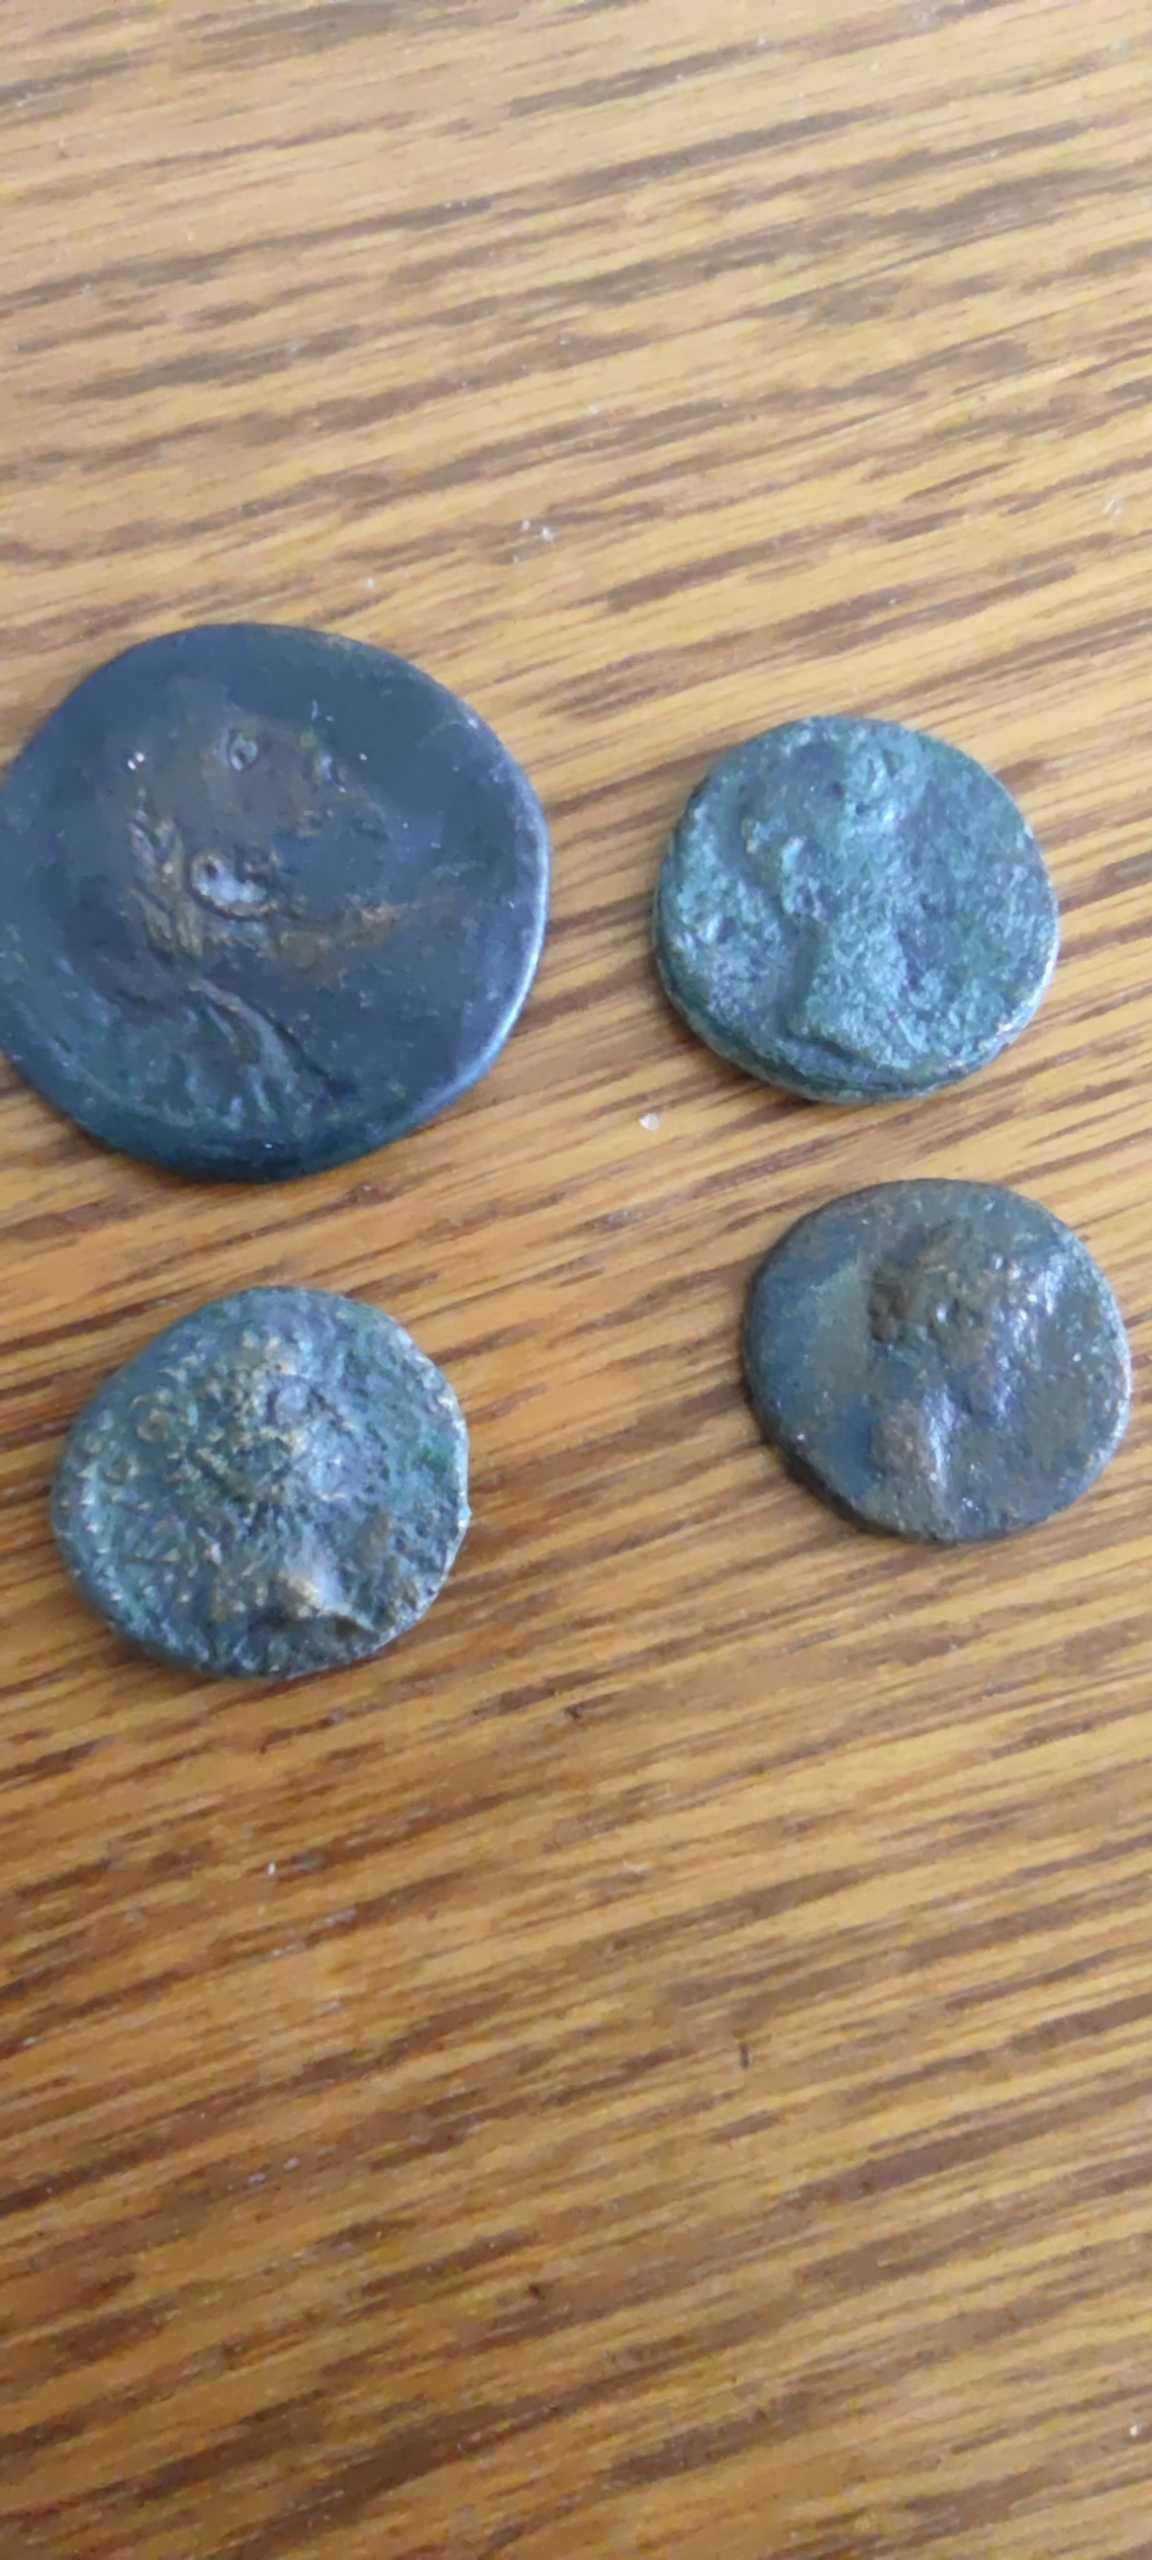 Monety rzymskie lot 4 szt